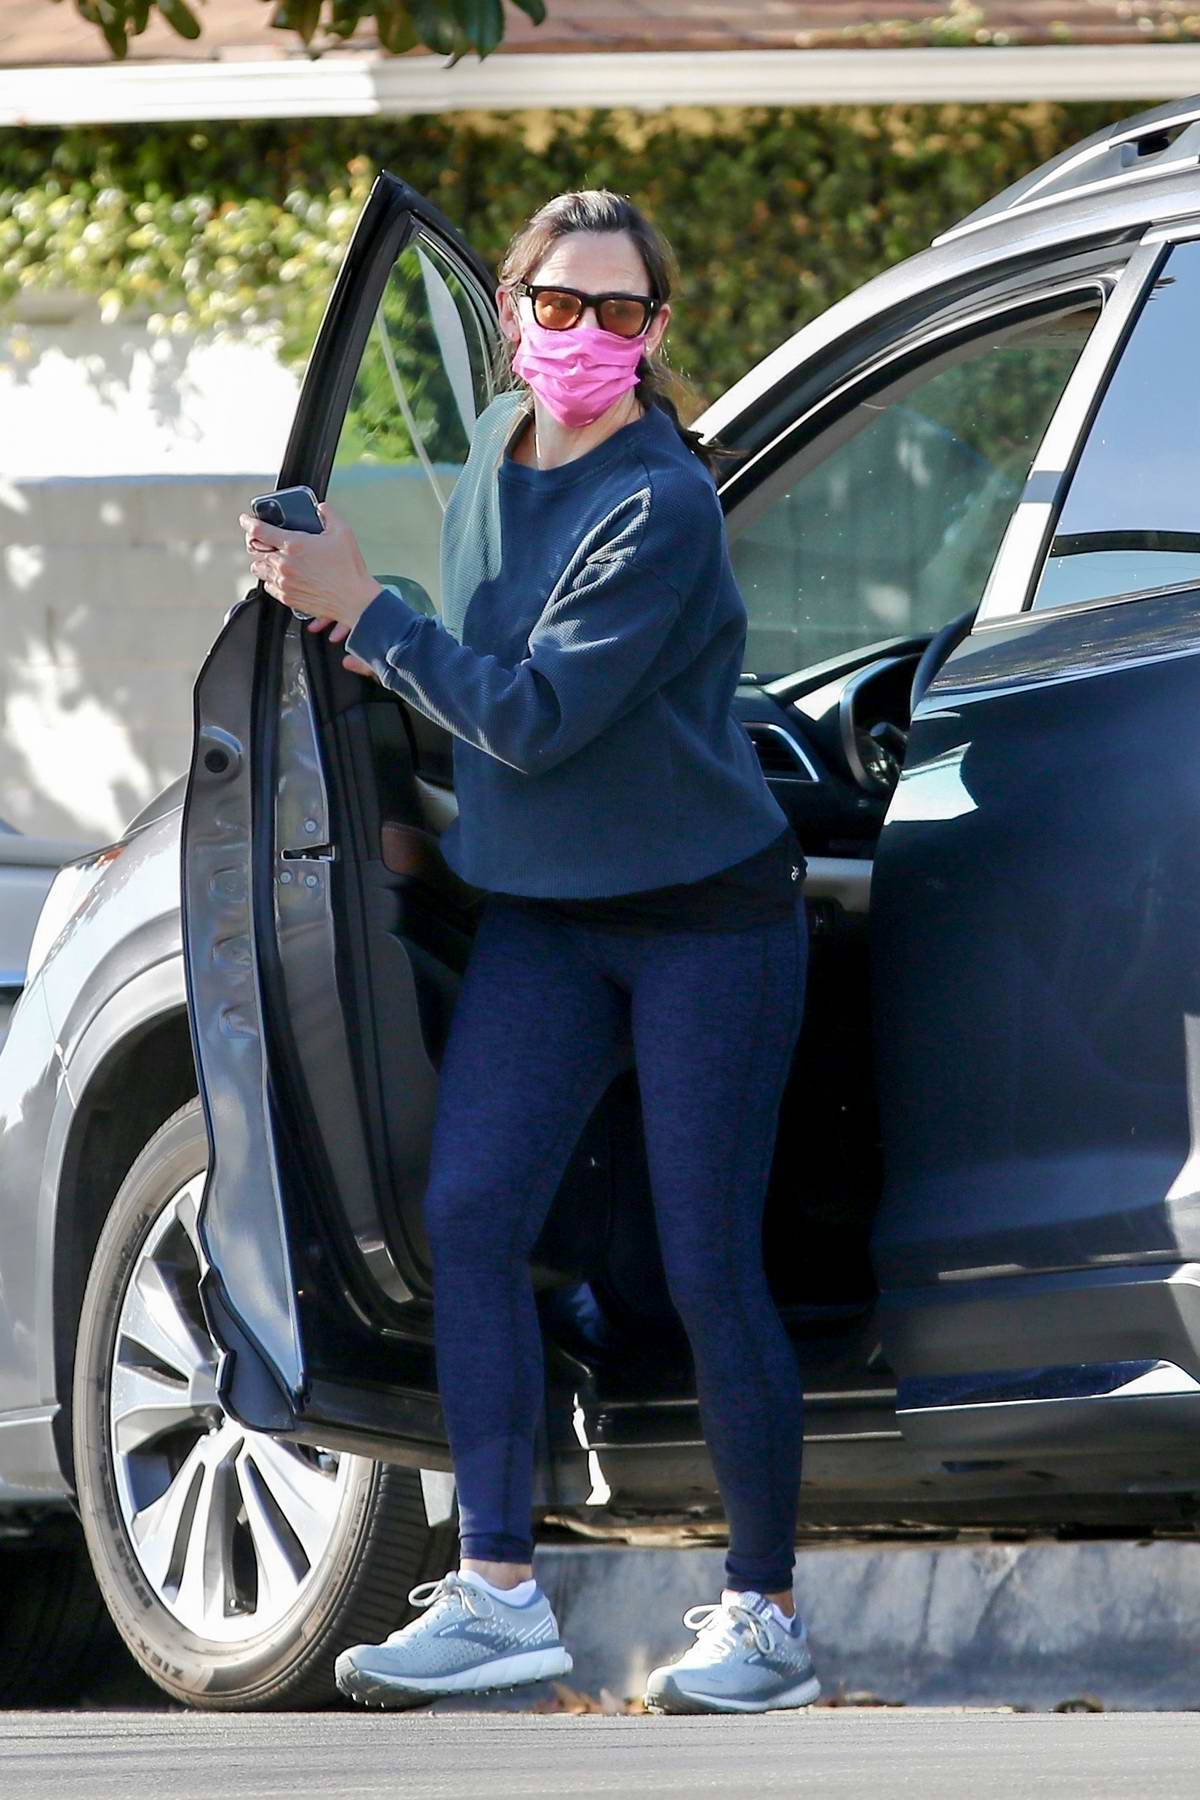 Jennifer Garner shows off her toned legs in navy blue leggings